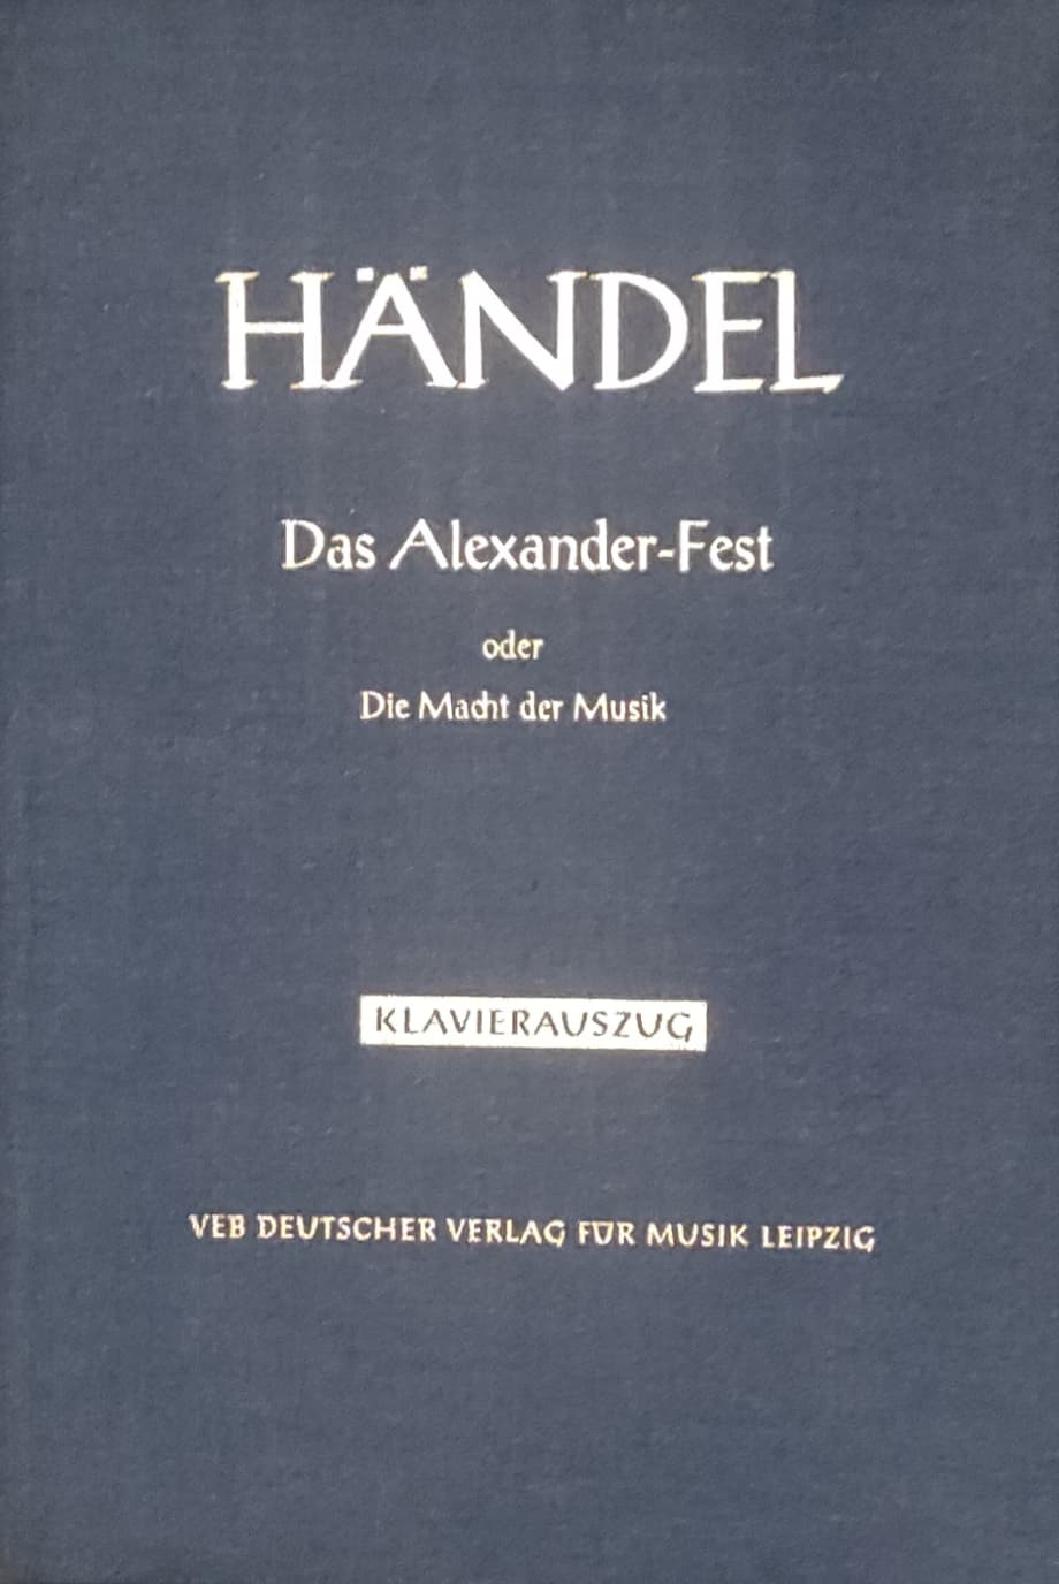 Händel - Das Alexander-Fest oder die Macht der Musik, Klavierauszug - gebraucht